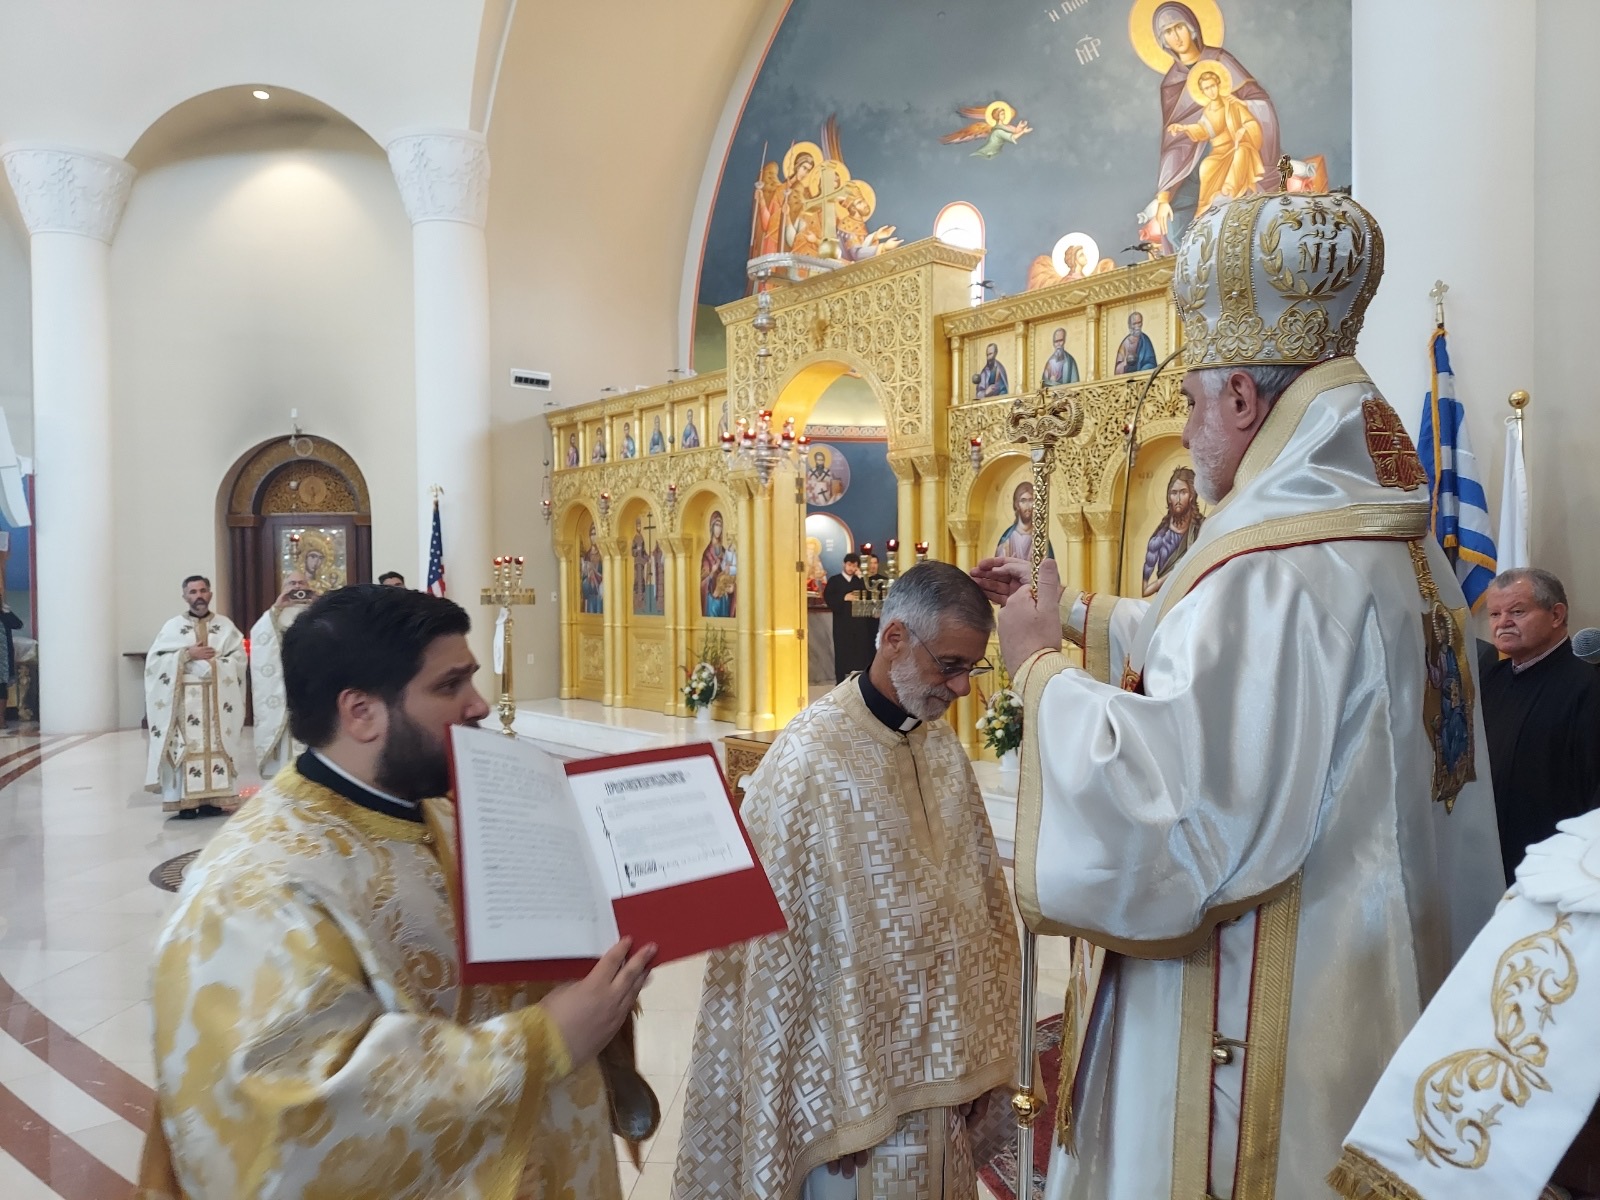 Fr. Martin Enthronement